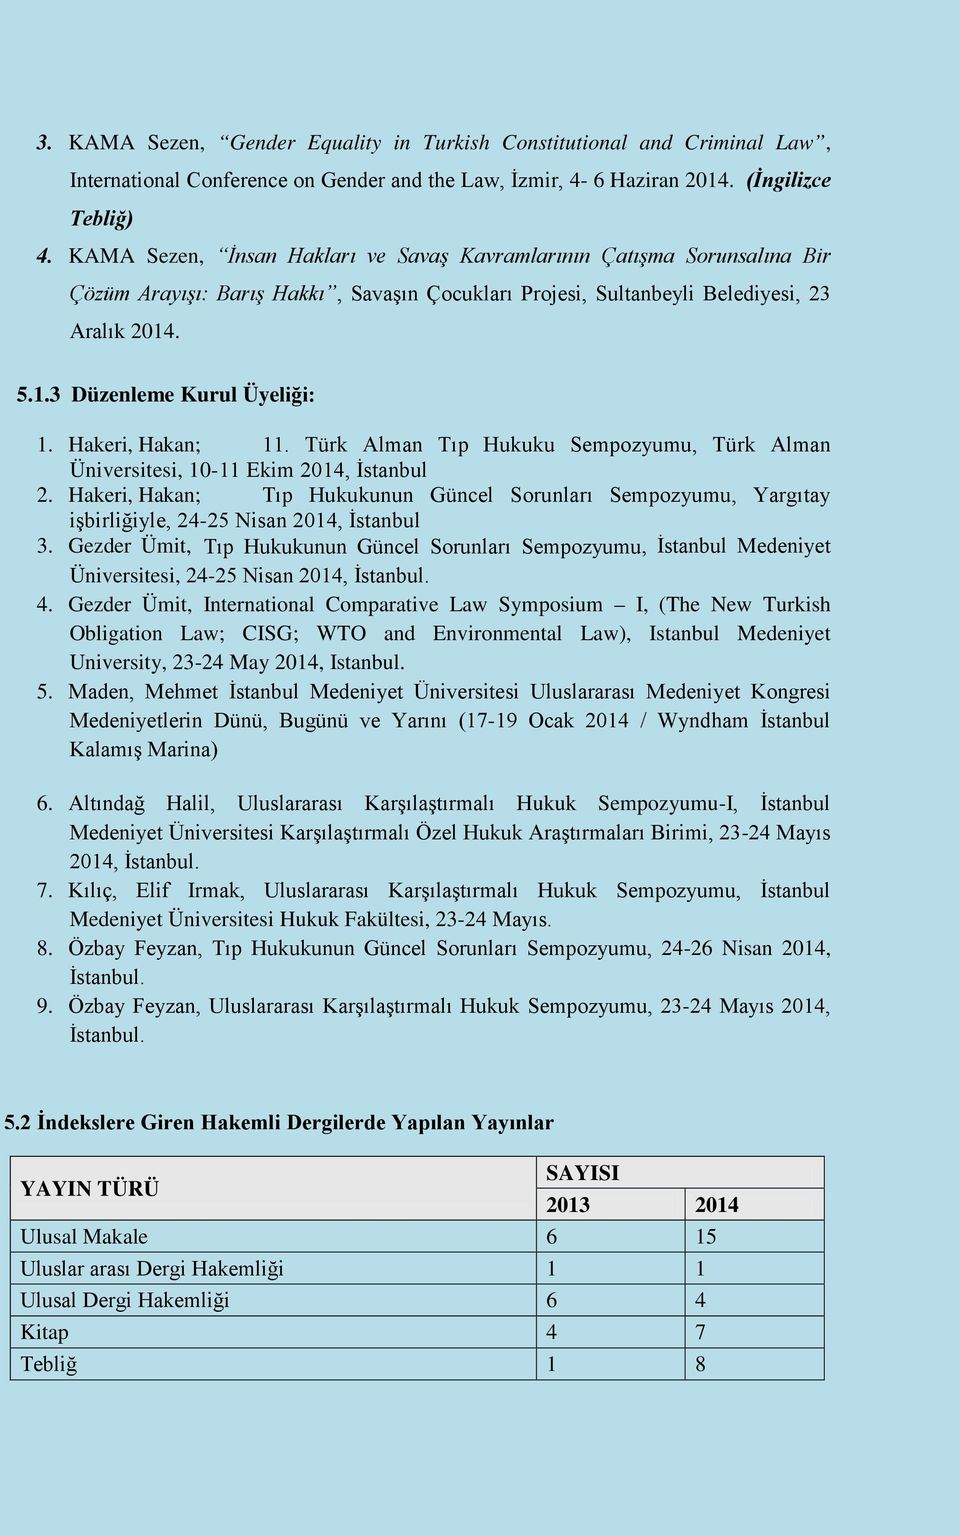 Hakeri, Hakan; 11. Türk Alman Tıp Hukuku Sempozyumu, Türk Alman Üniversitesi, 10-11 Ekim 2014, İstanbul 2.